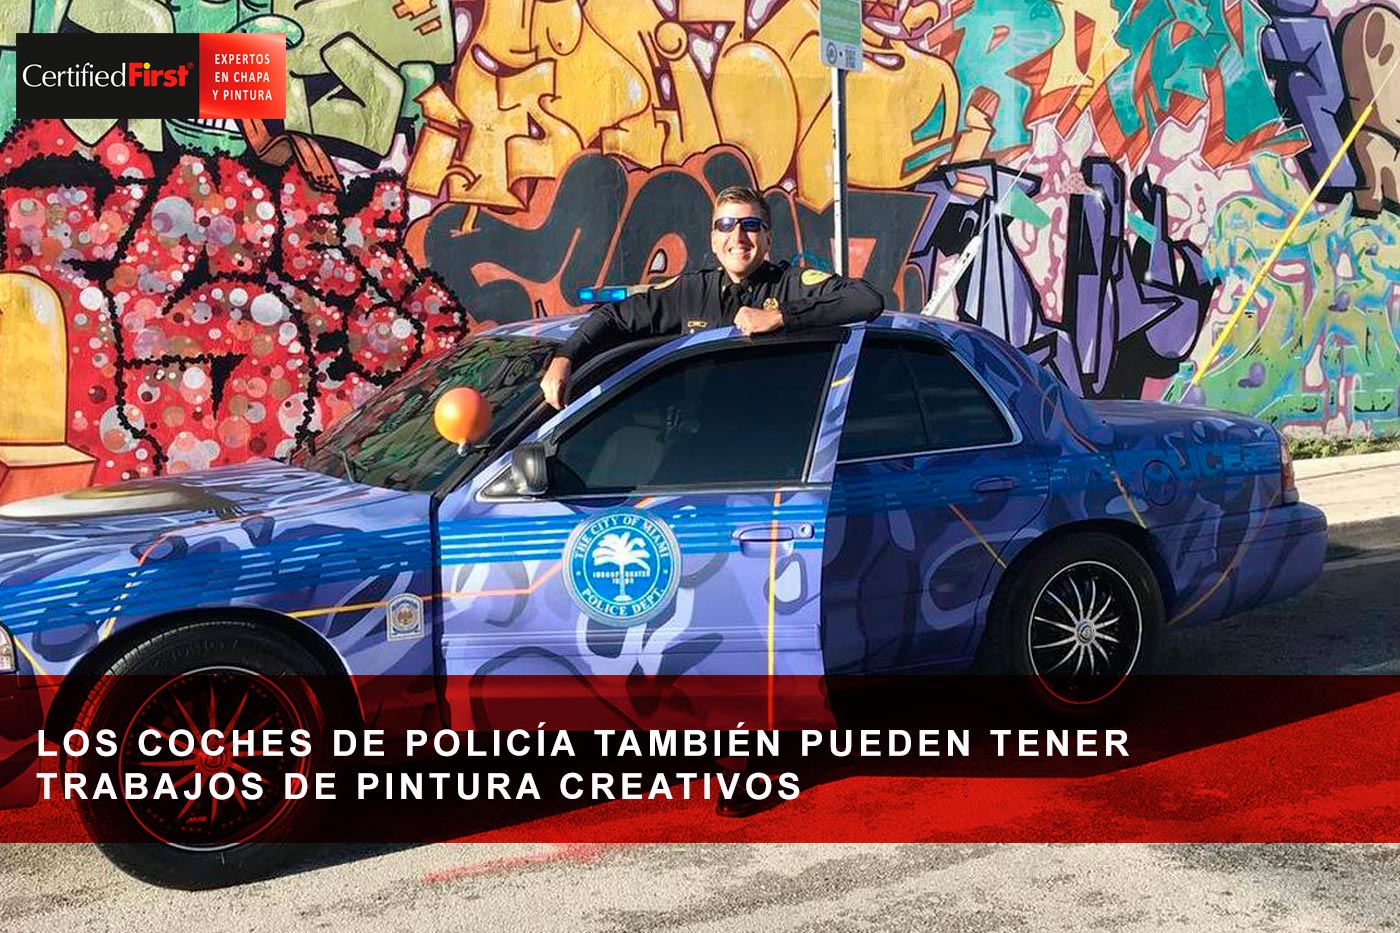 Los coches de policía también pueden tener trabajos de pintura creativos